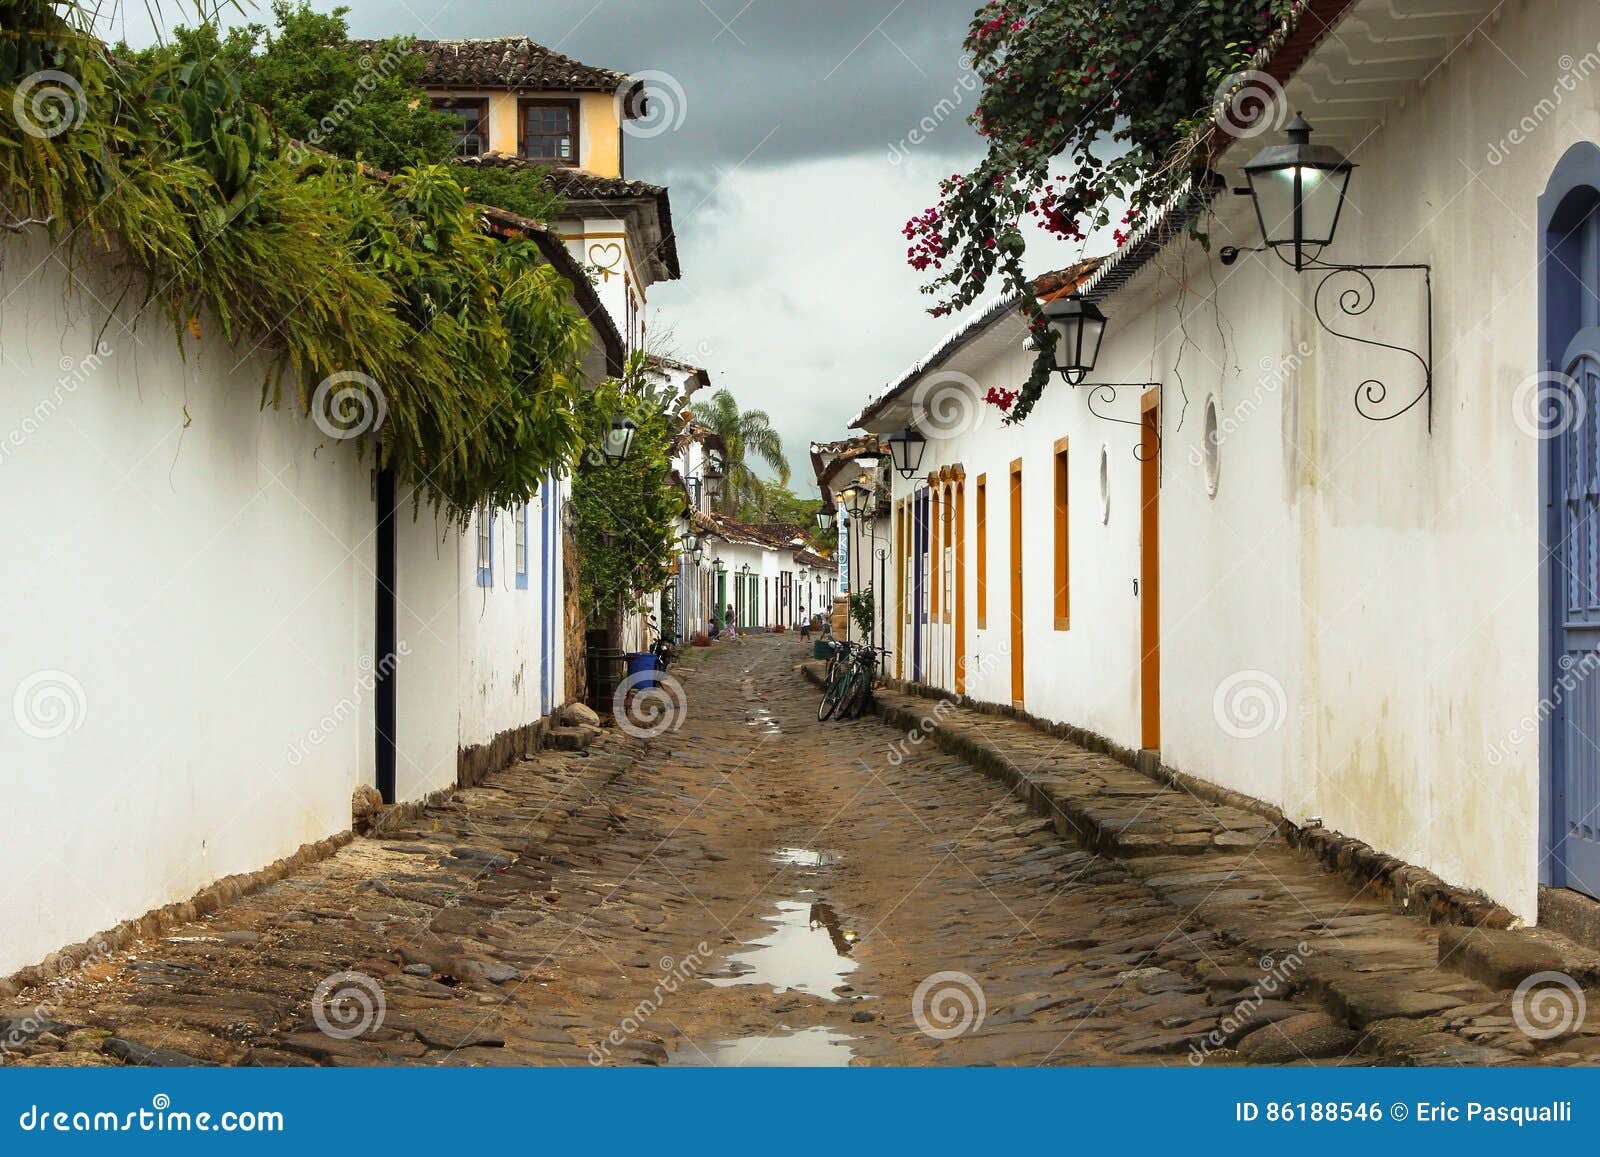 street of the colonial city of parati rio de janeiro - brazil